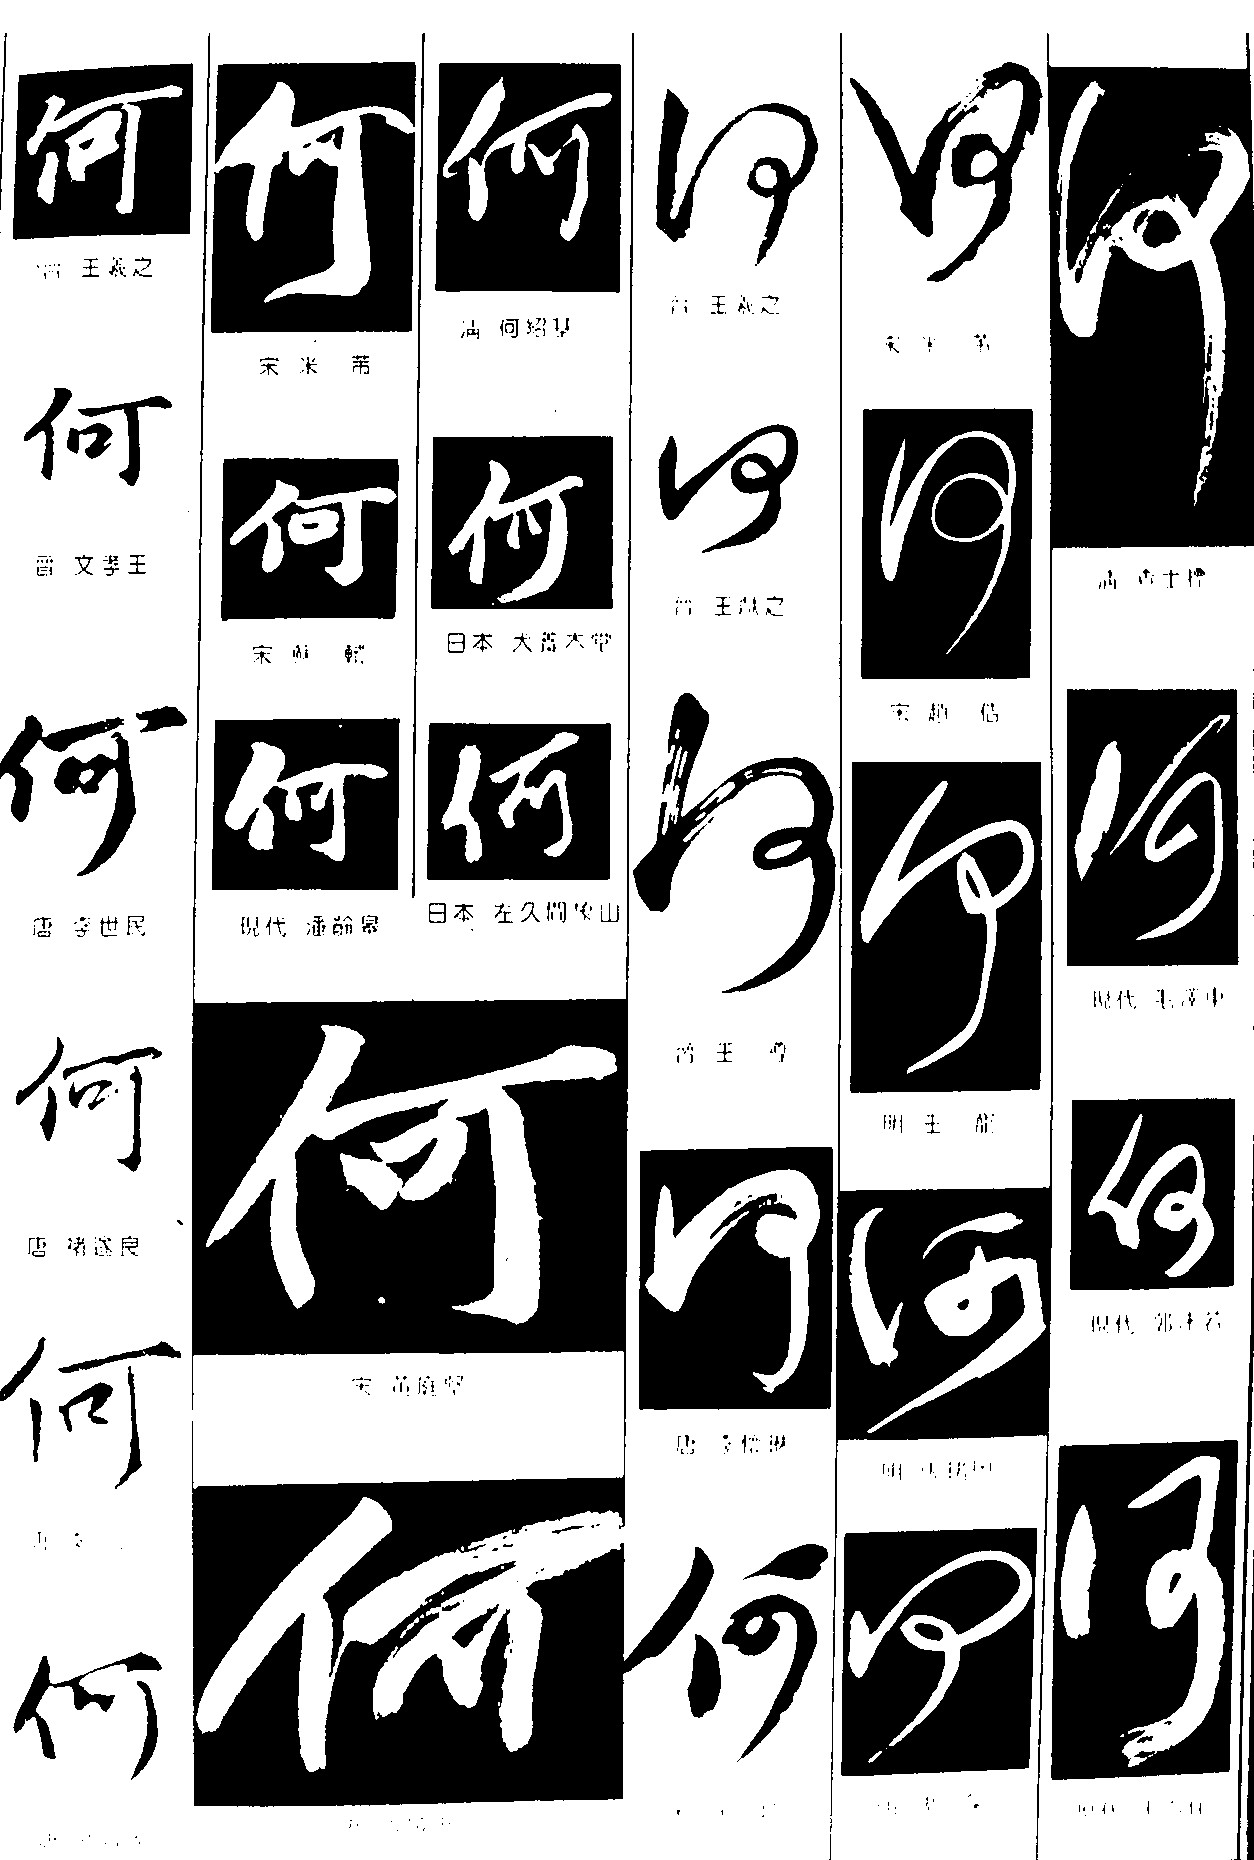 何_书法字体_字体设计作品-中国字体设计网_ziti.cndesign.com